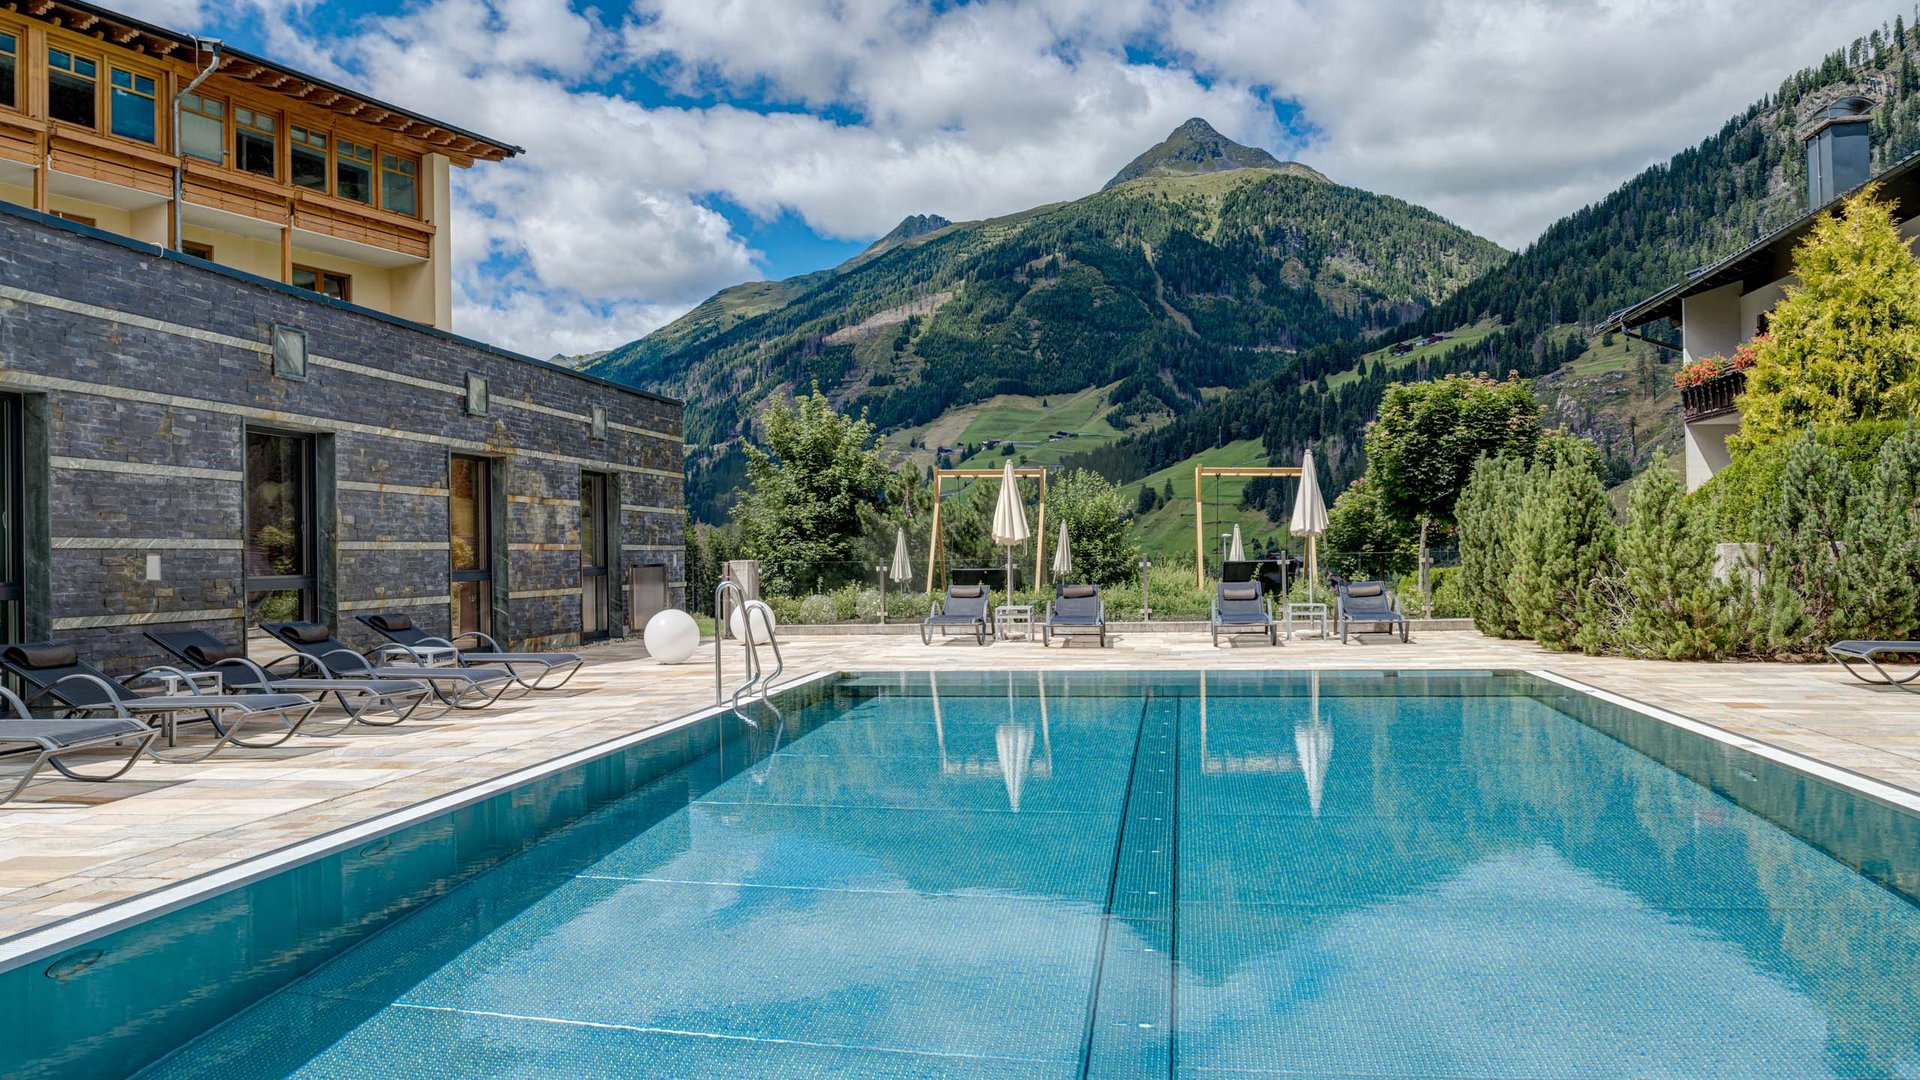 Hotel in Austria con piscina: vacanze benessere